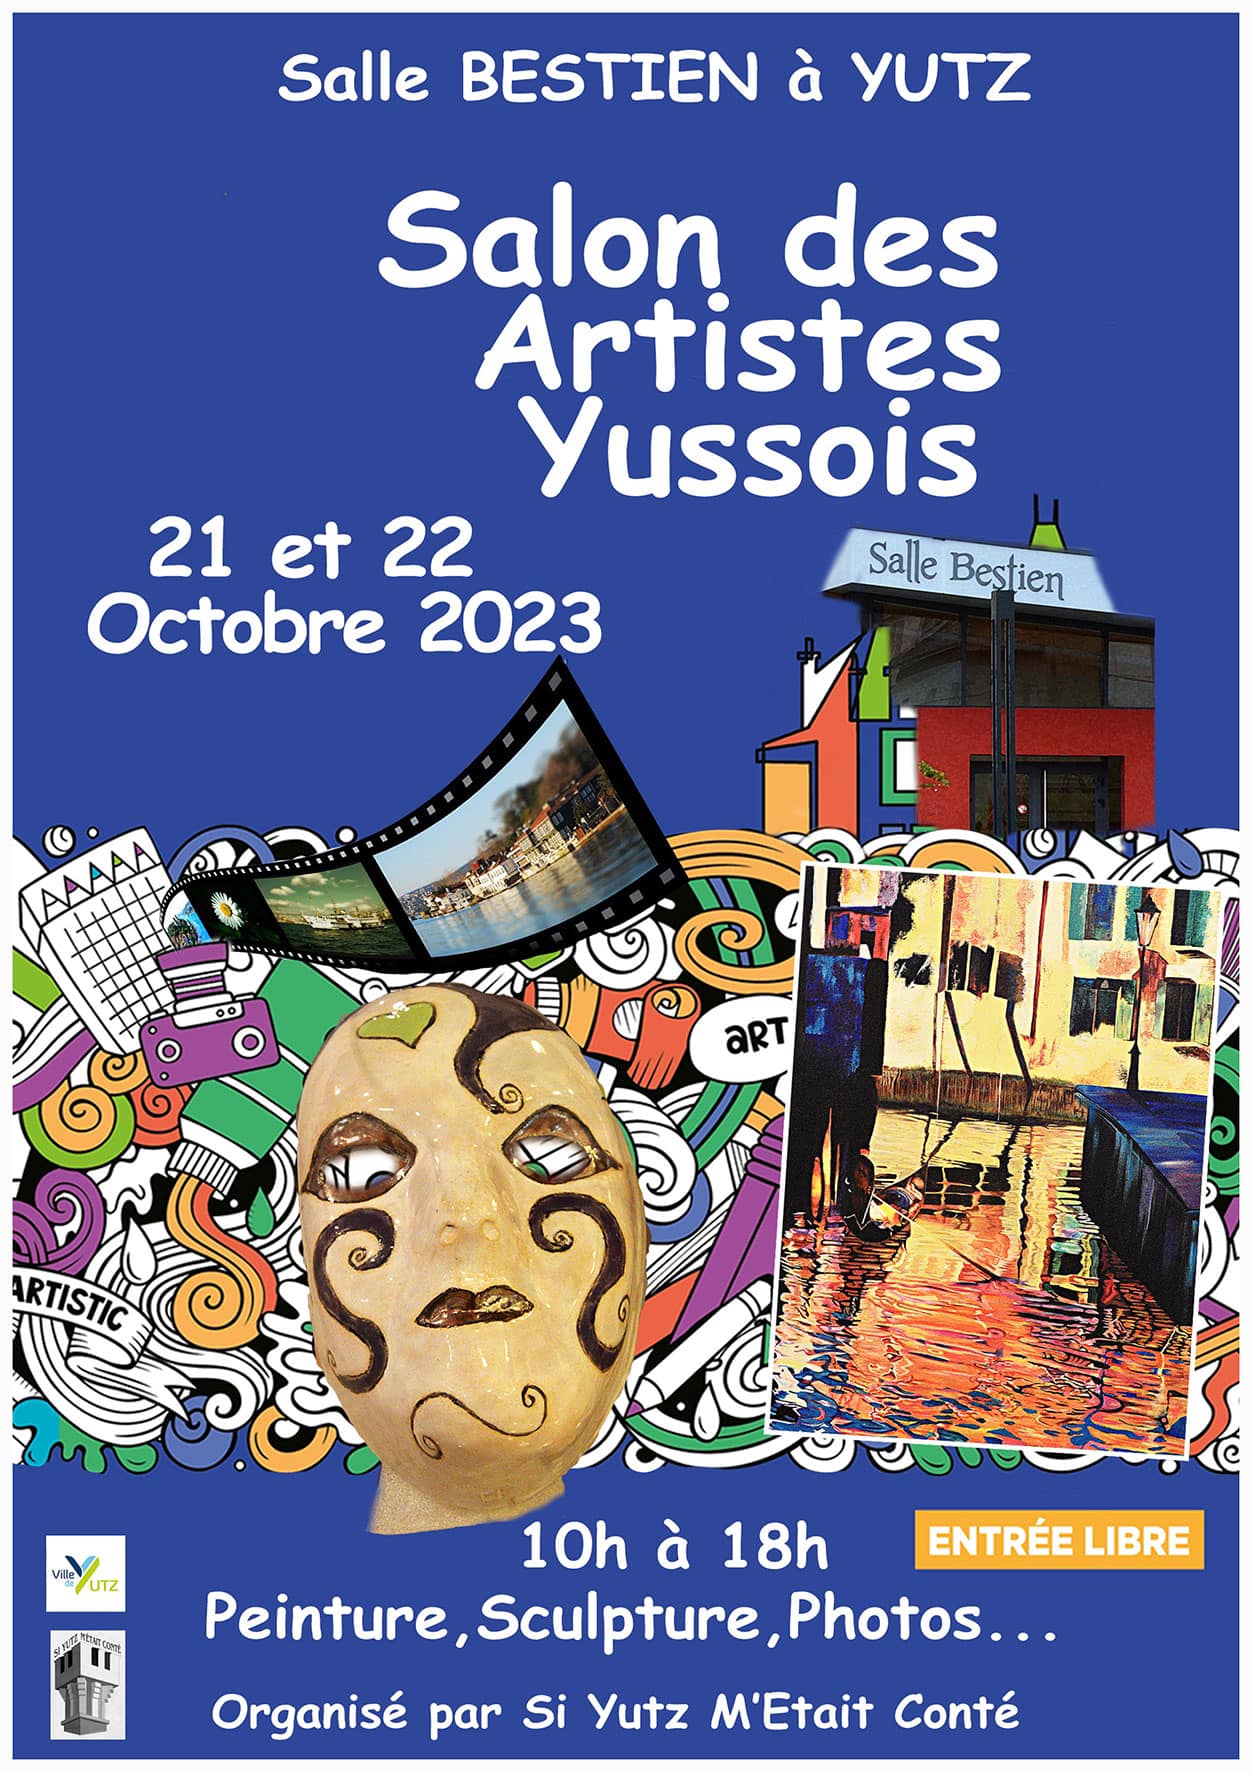 Salon of Yussois artists